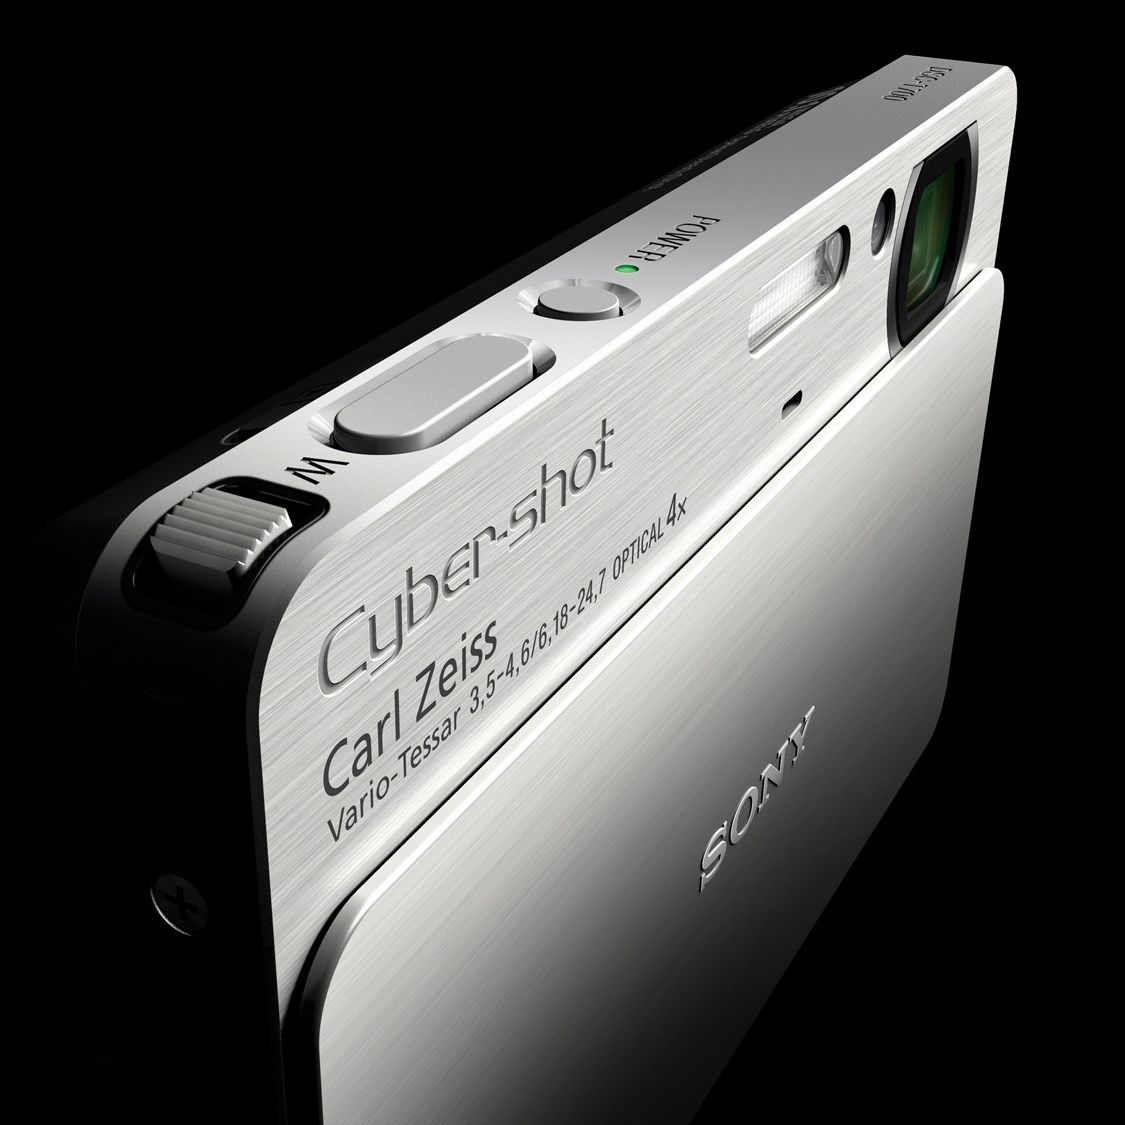 Sony Cyber-shot DSC-T700 digital camera